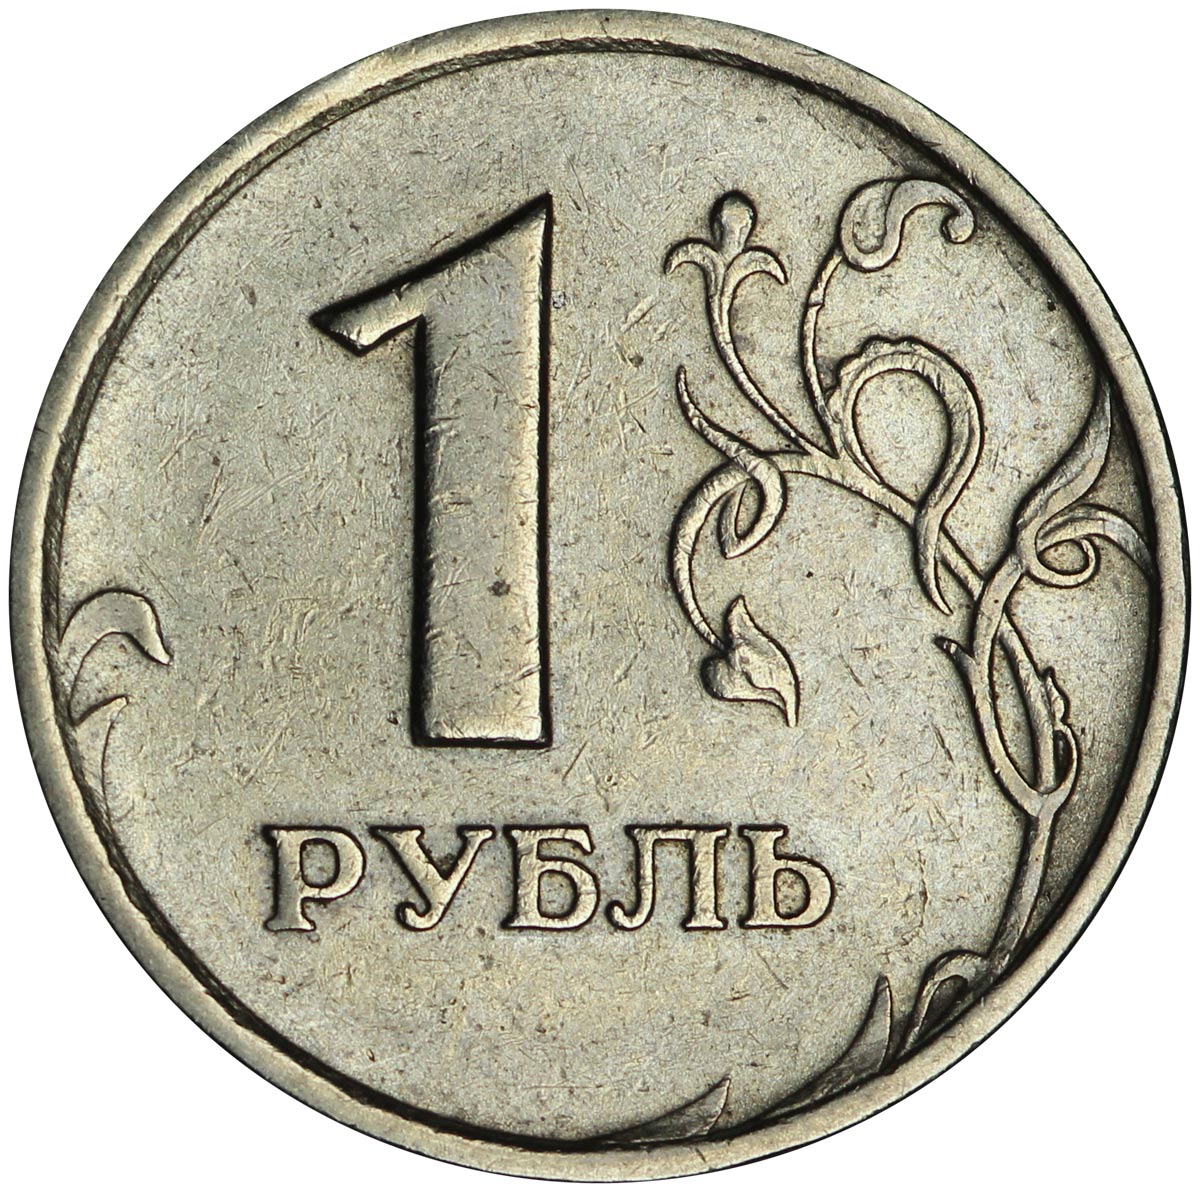 Рубль 8 букв. 1 Рубль 1997 ММД широкий кант. ММД монета рубль 1997. Монета 1 рубль 2010 СПМД. 1 Рубль 1997 и 1998 года ММД (широкий кант).